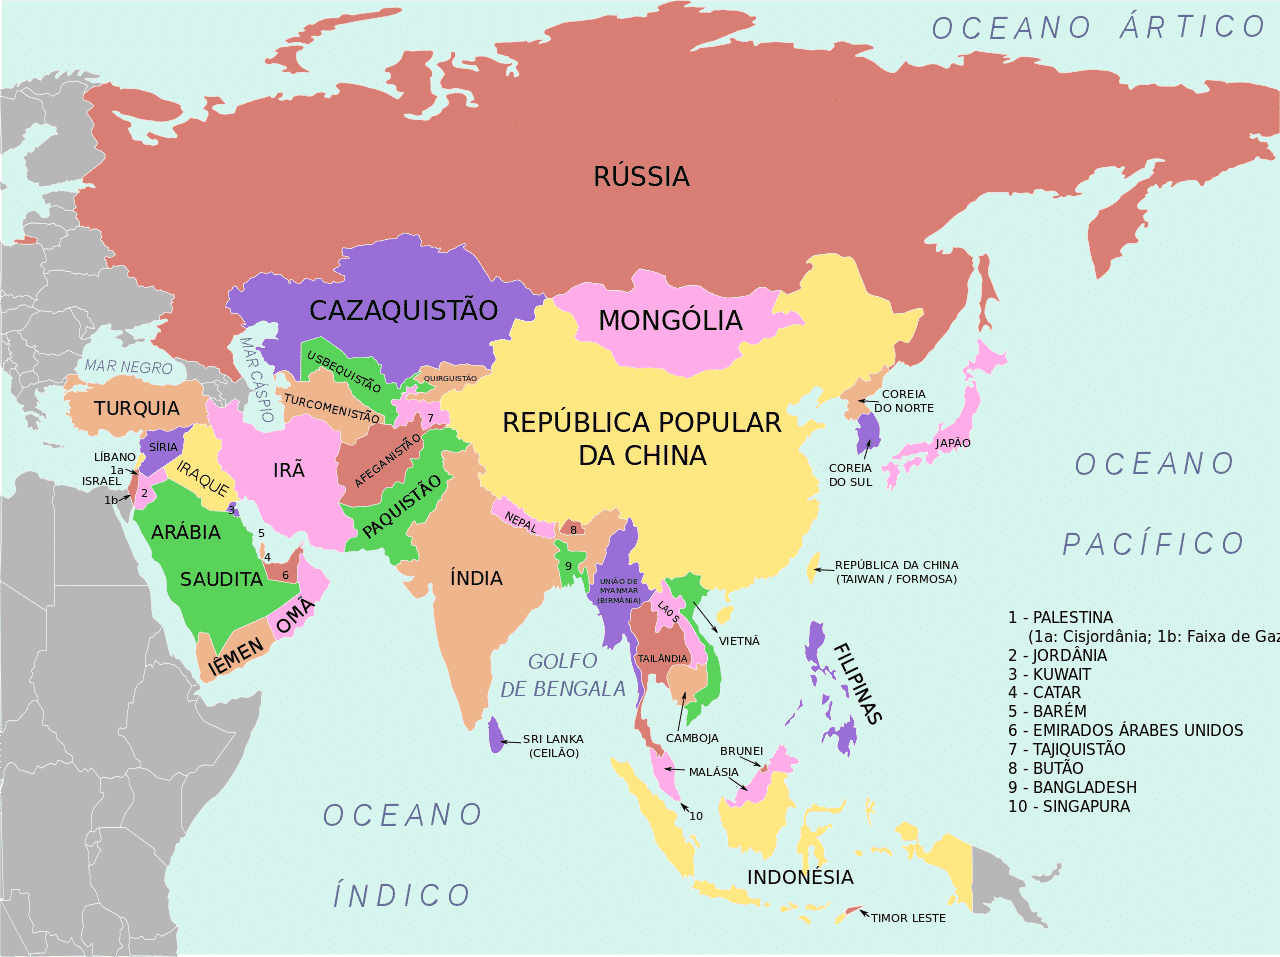 conheça todas as regiões da Ásia